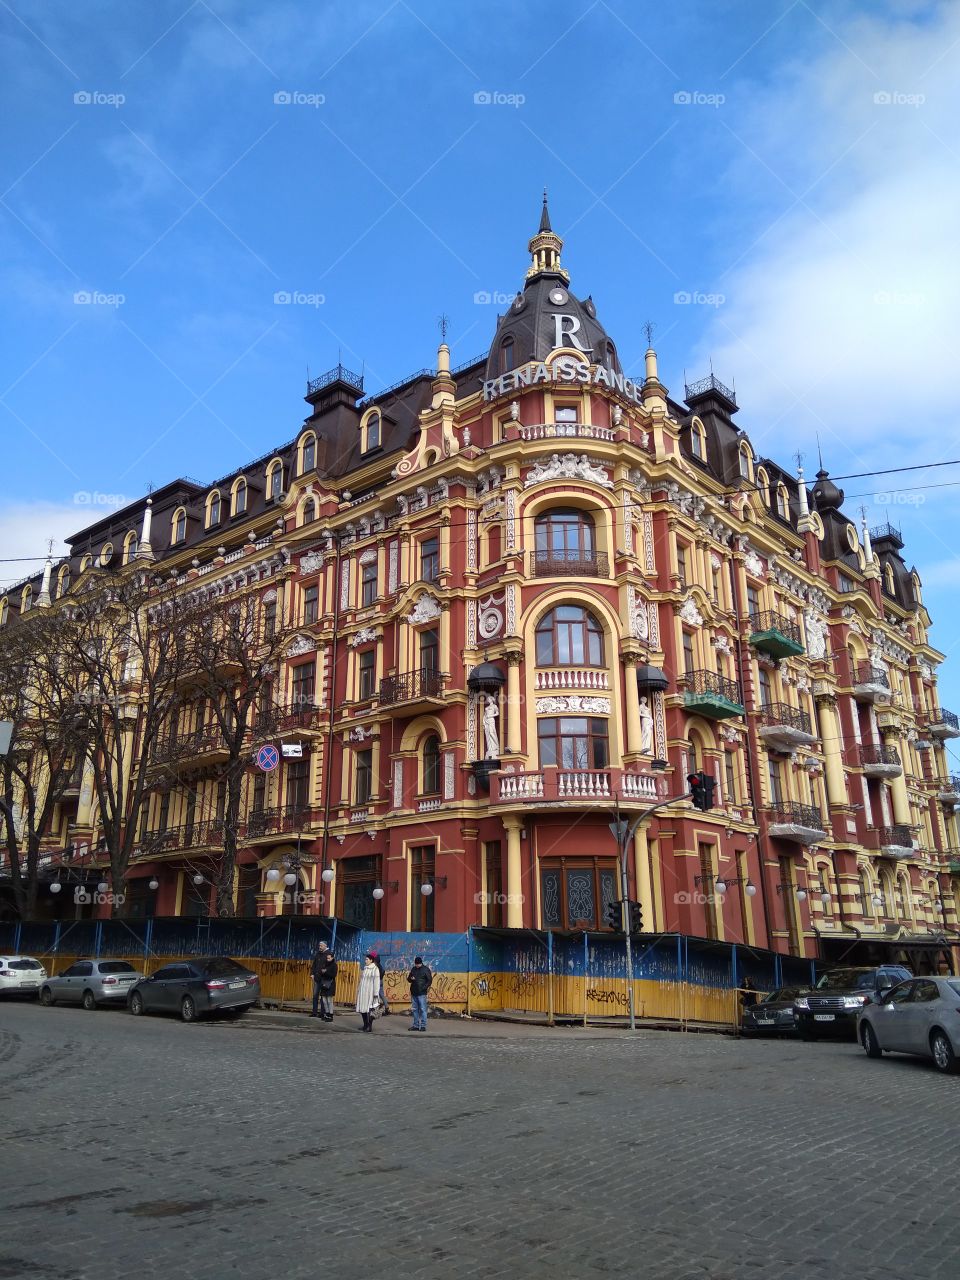 Отреставрированное здание на пересечении улиц Владимирская и Прорезная город Киев. Ранняя весна